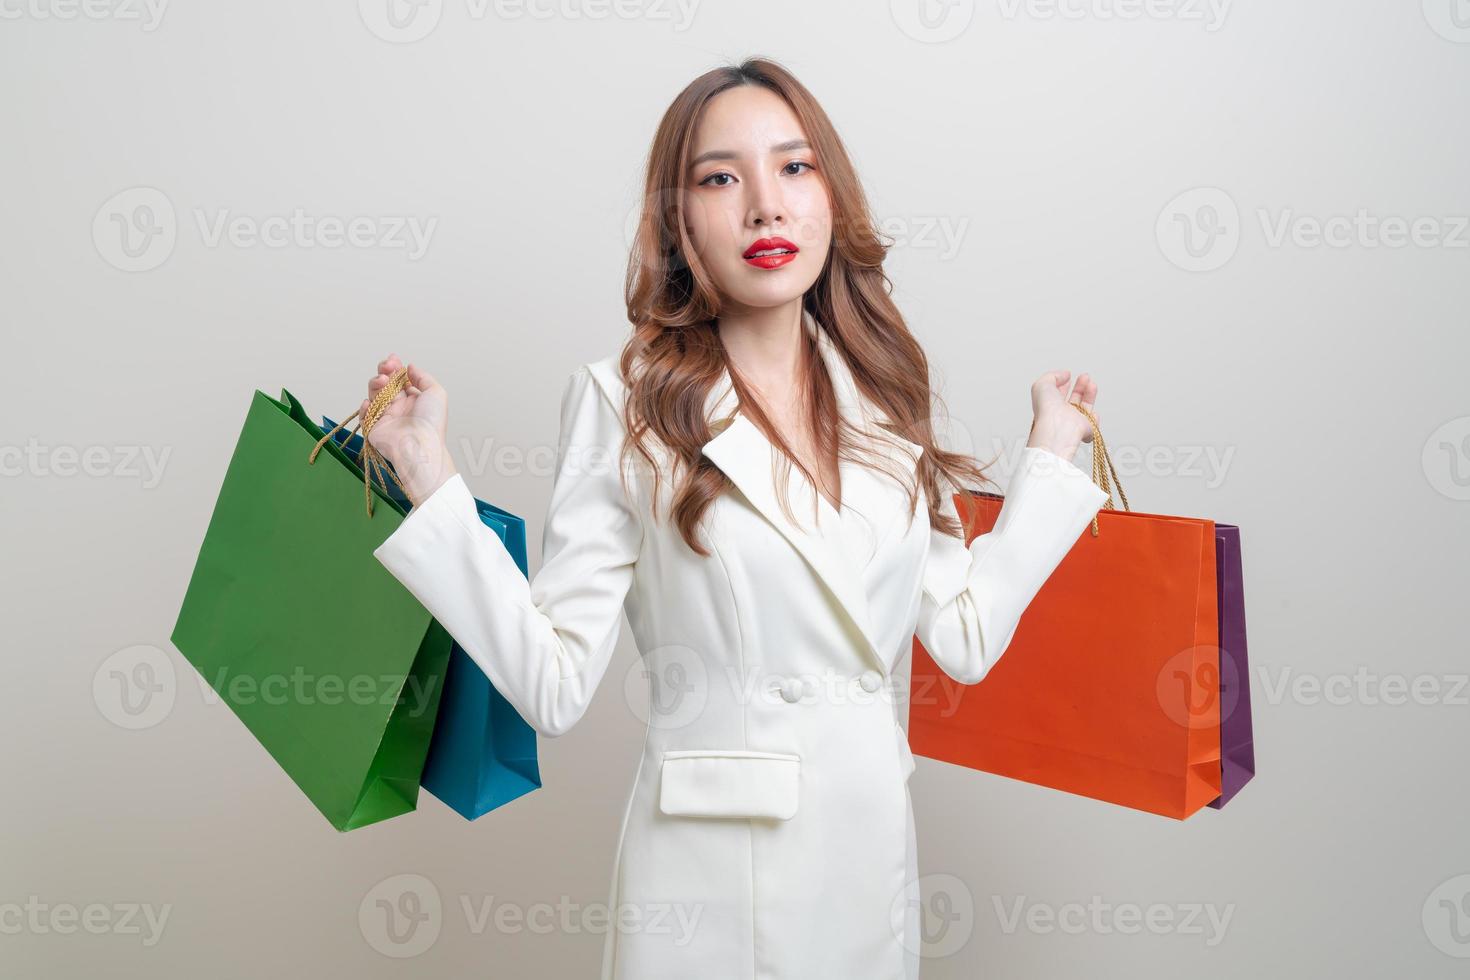 retrato de uma linda mulher asiática segurando uma sacola de compras no fundo branco foto